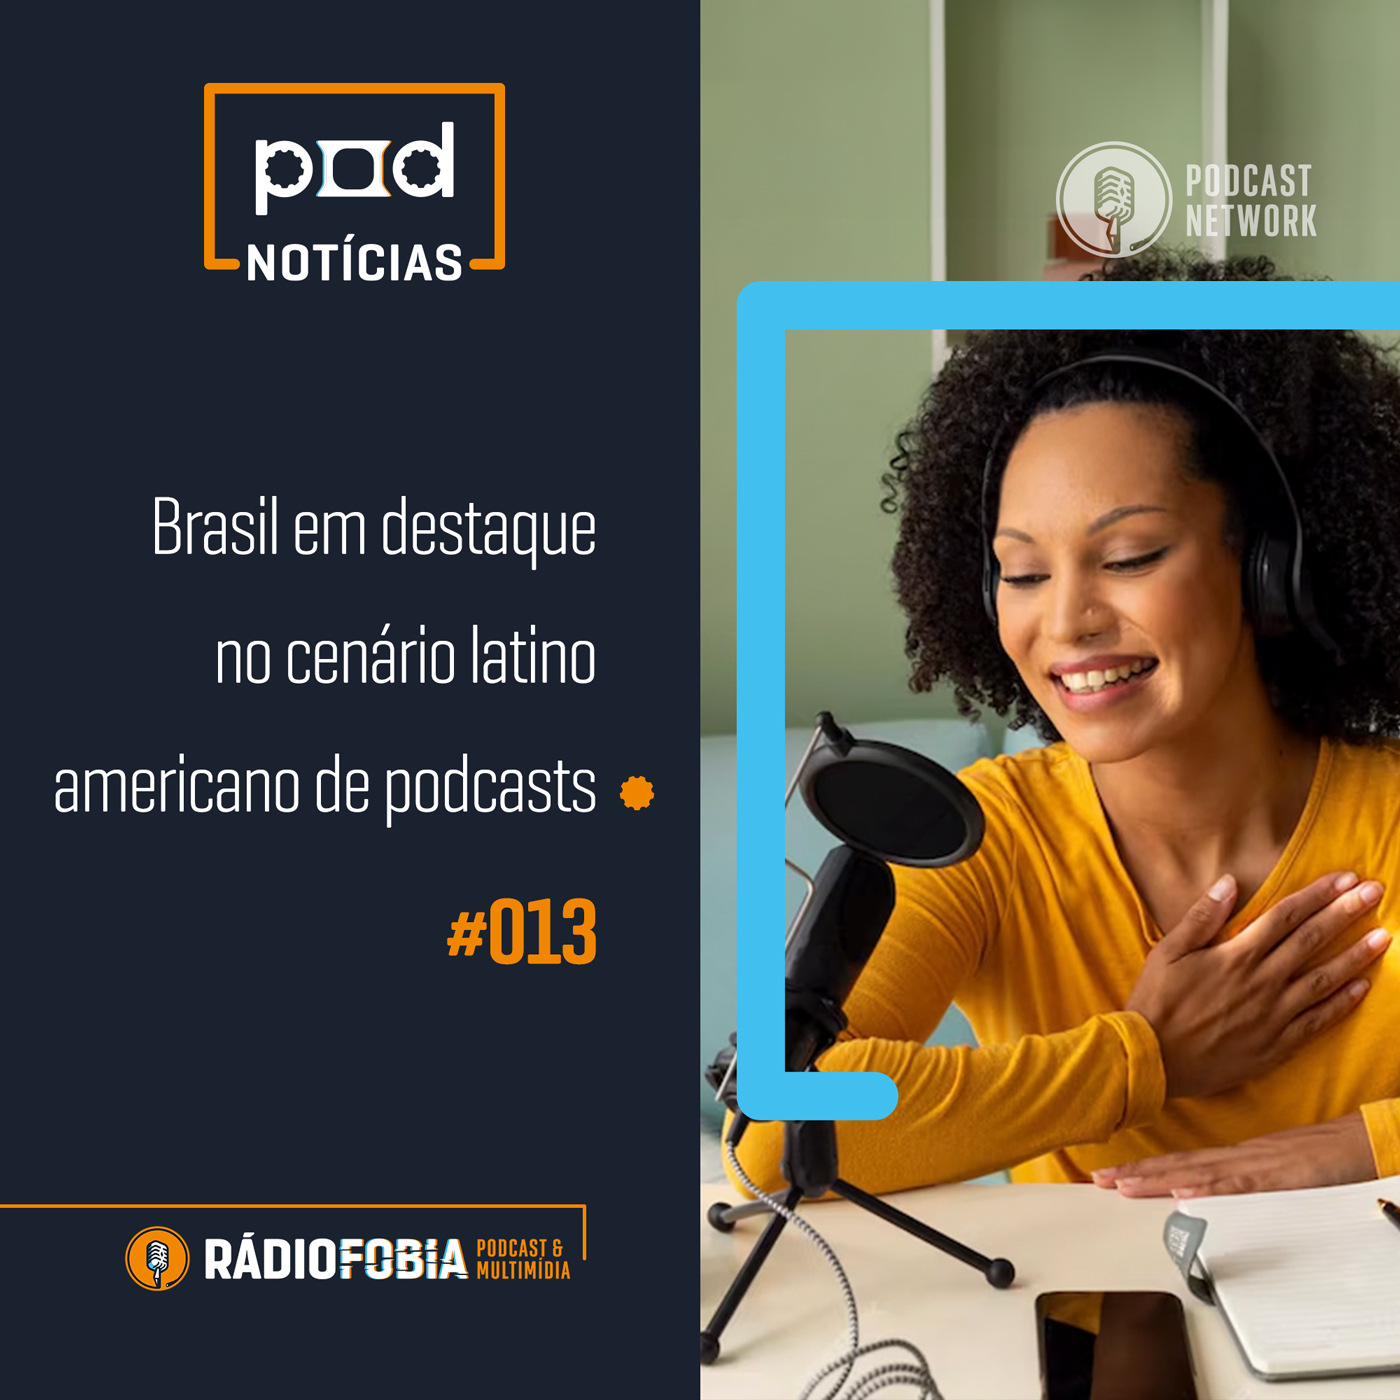 Pod Notícias 013 – Brasil em destaque no cenário latino americano de podcasts